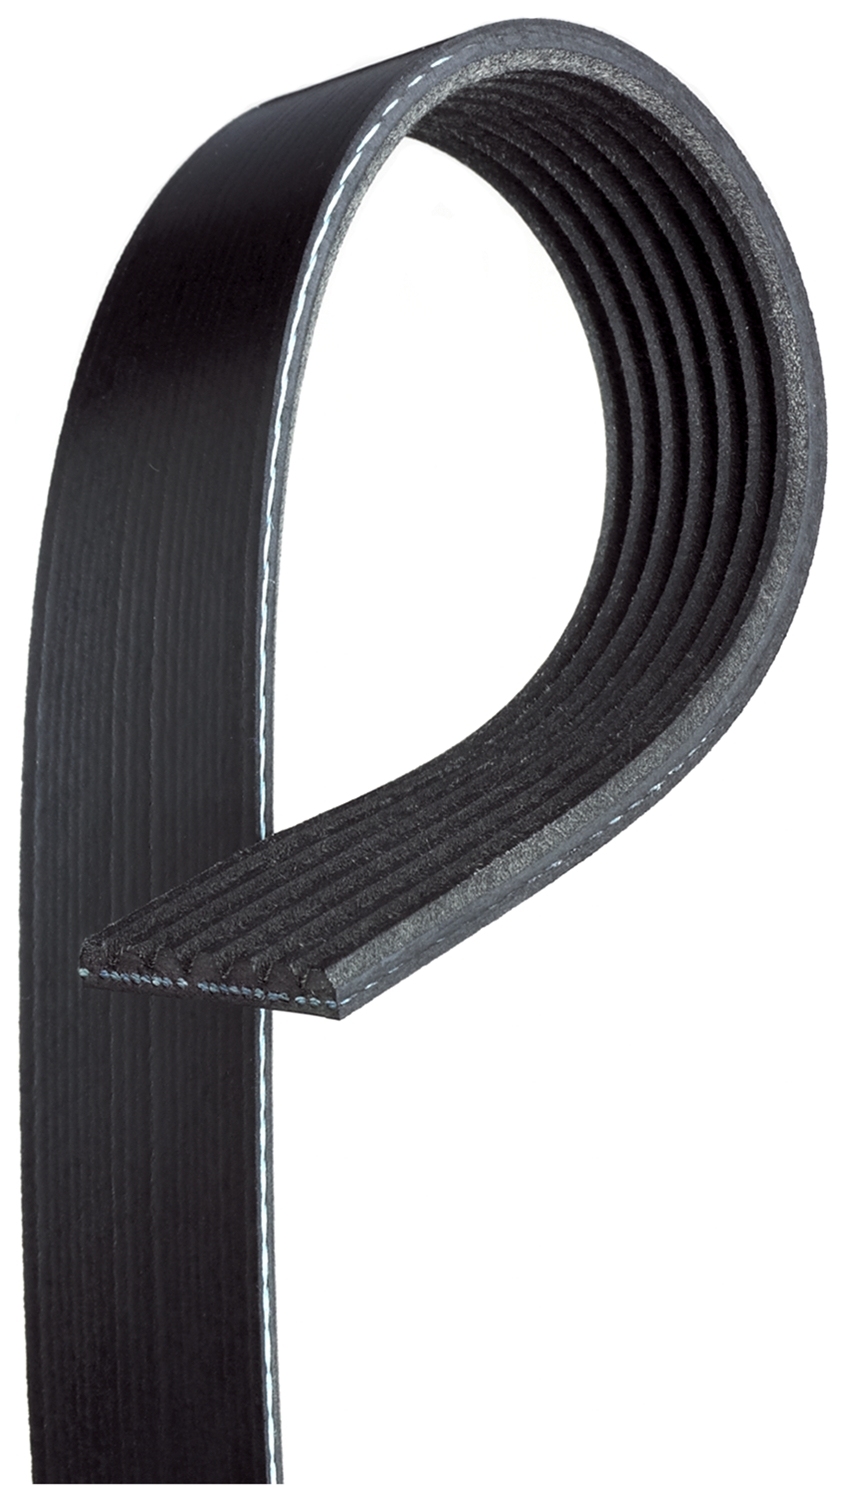 7PK1815-2 Years Warranty! Brand New Gates V-Ribbed Belt